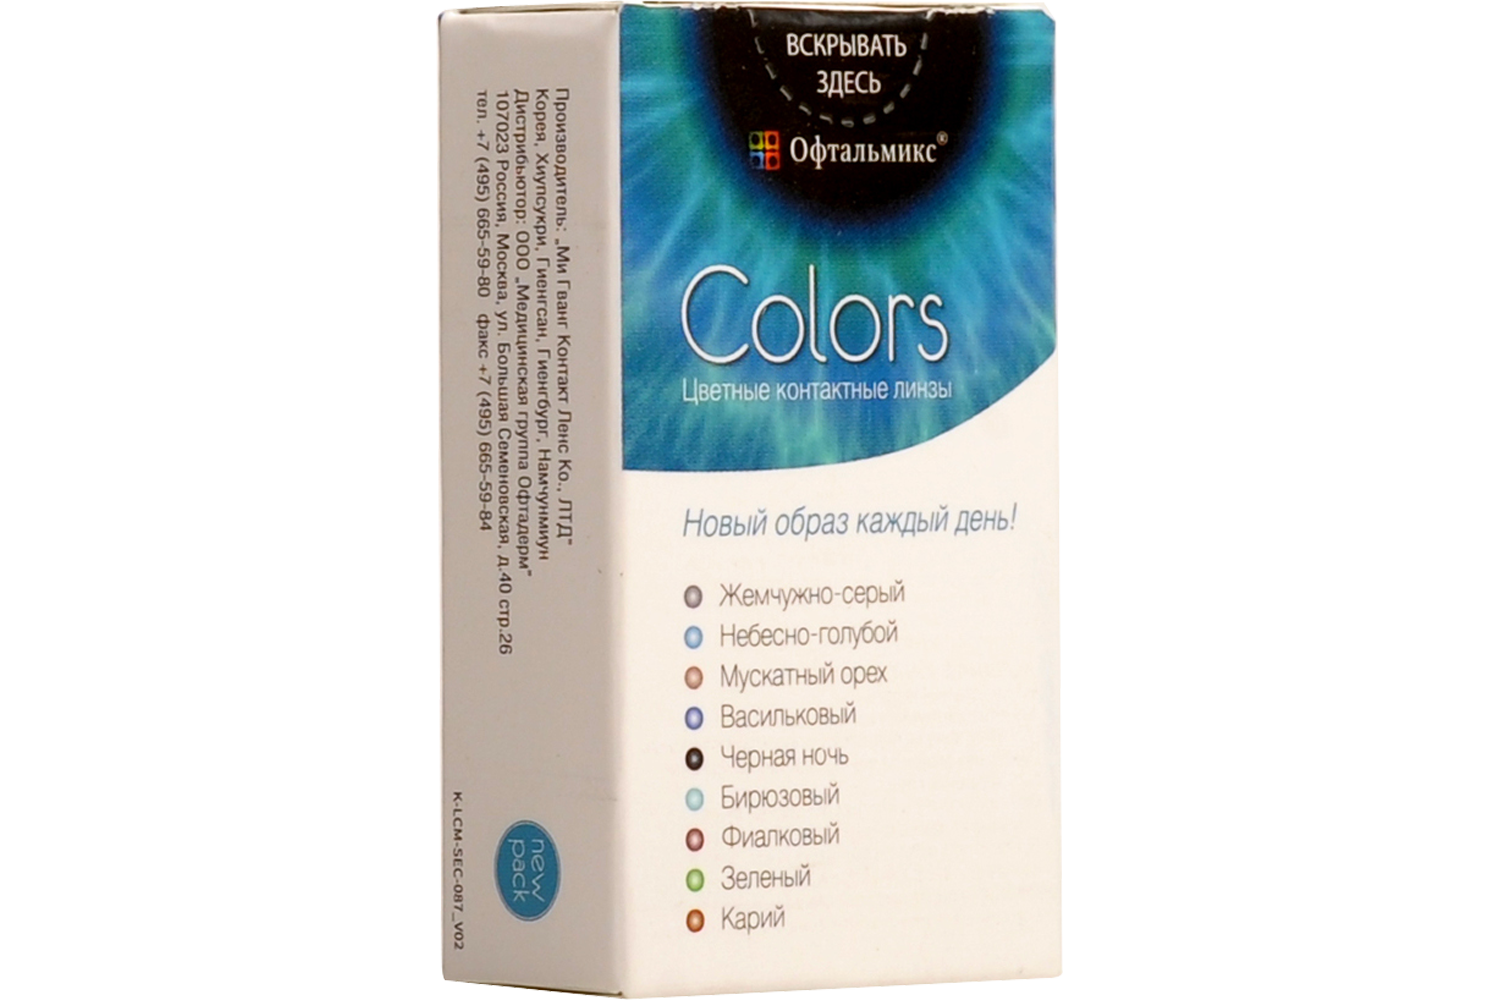 Цветные контактные линзы Офтальмикс Colors, 2 шт. PWR -5, 50, R 8.6, Aqua  - купить со скидкой